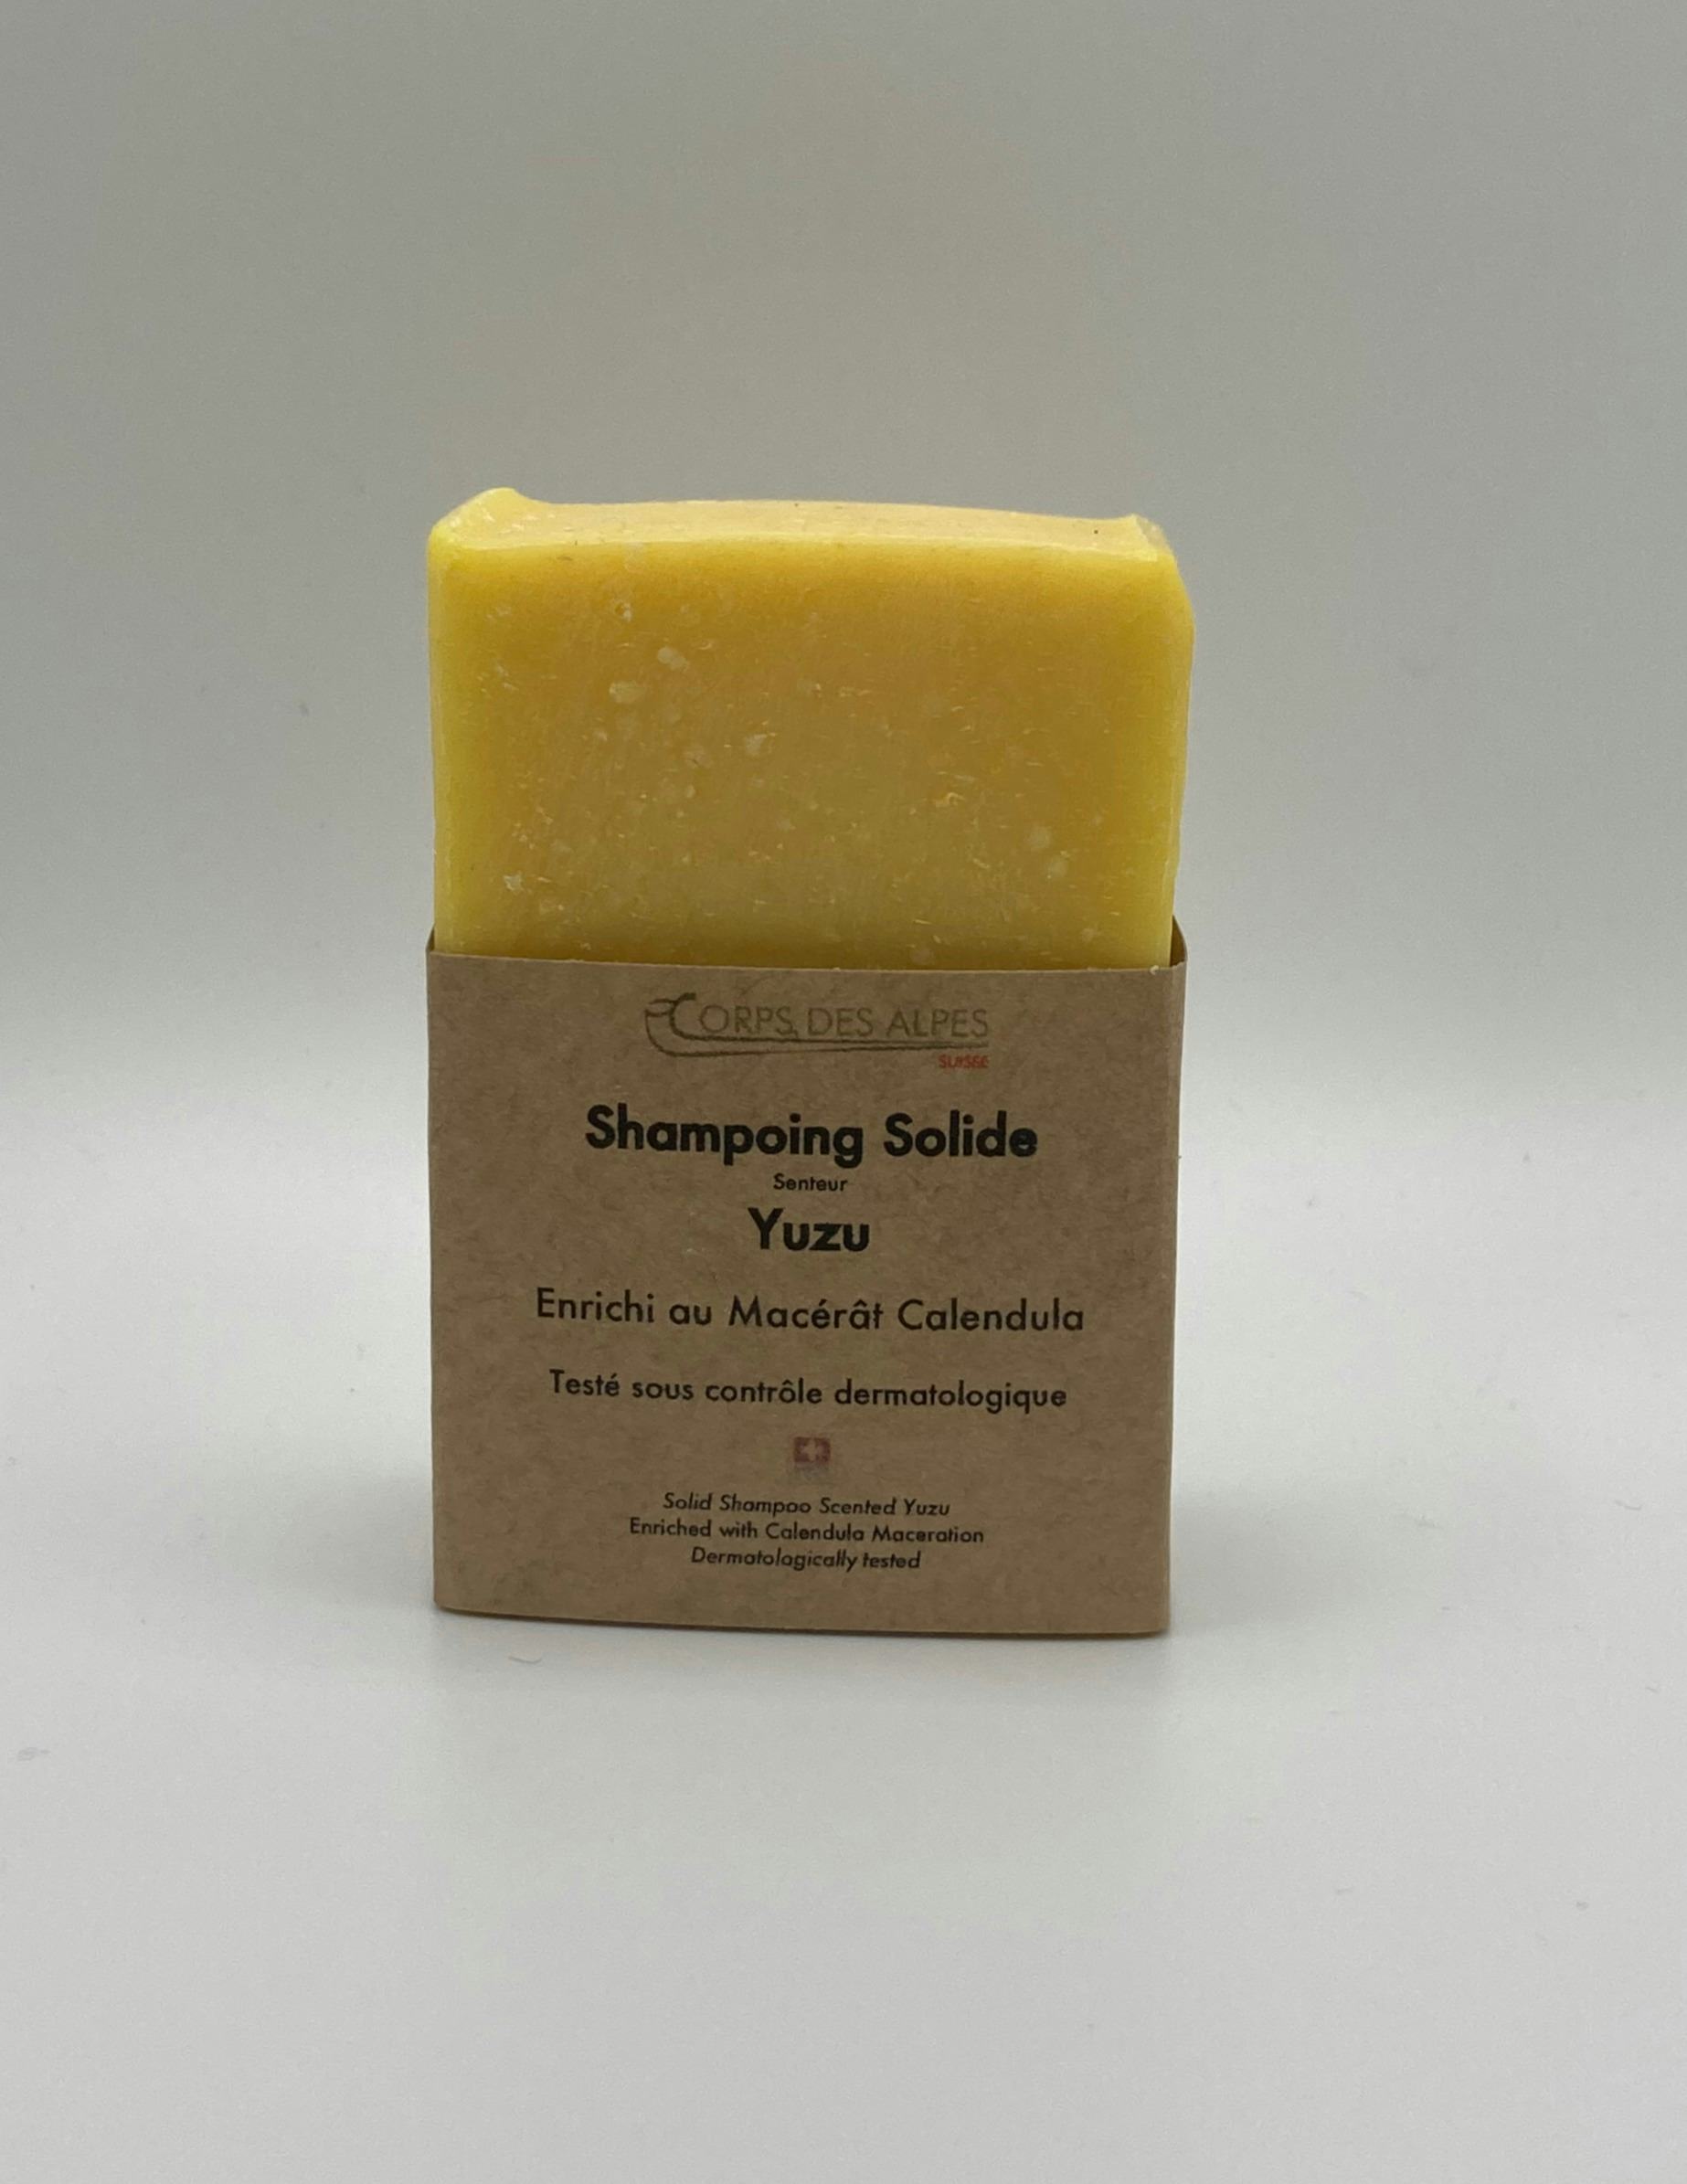 Shampoing solide senteur Yuzu, prodotto artigianale per la vendita diretta in Svizzera